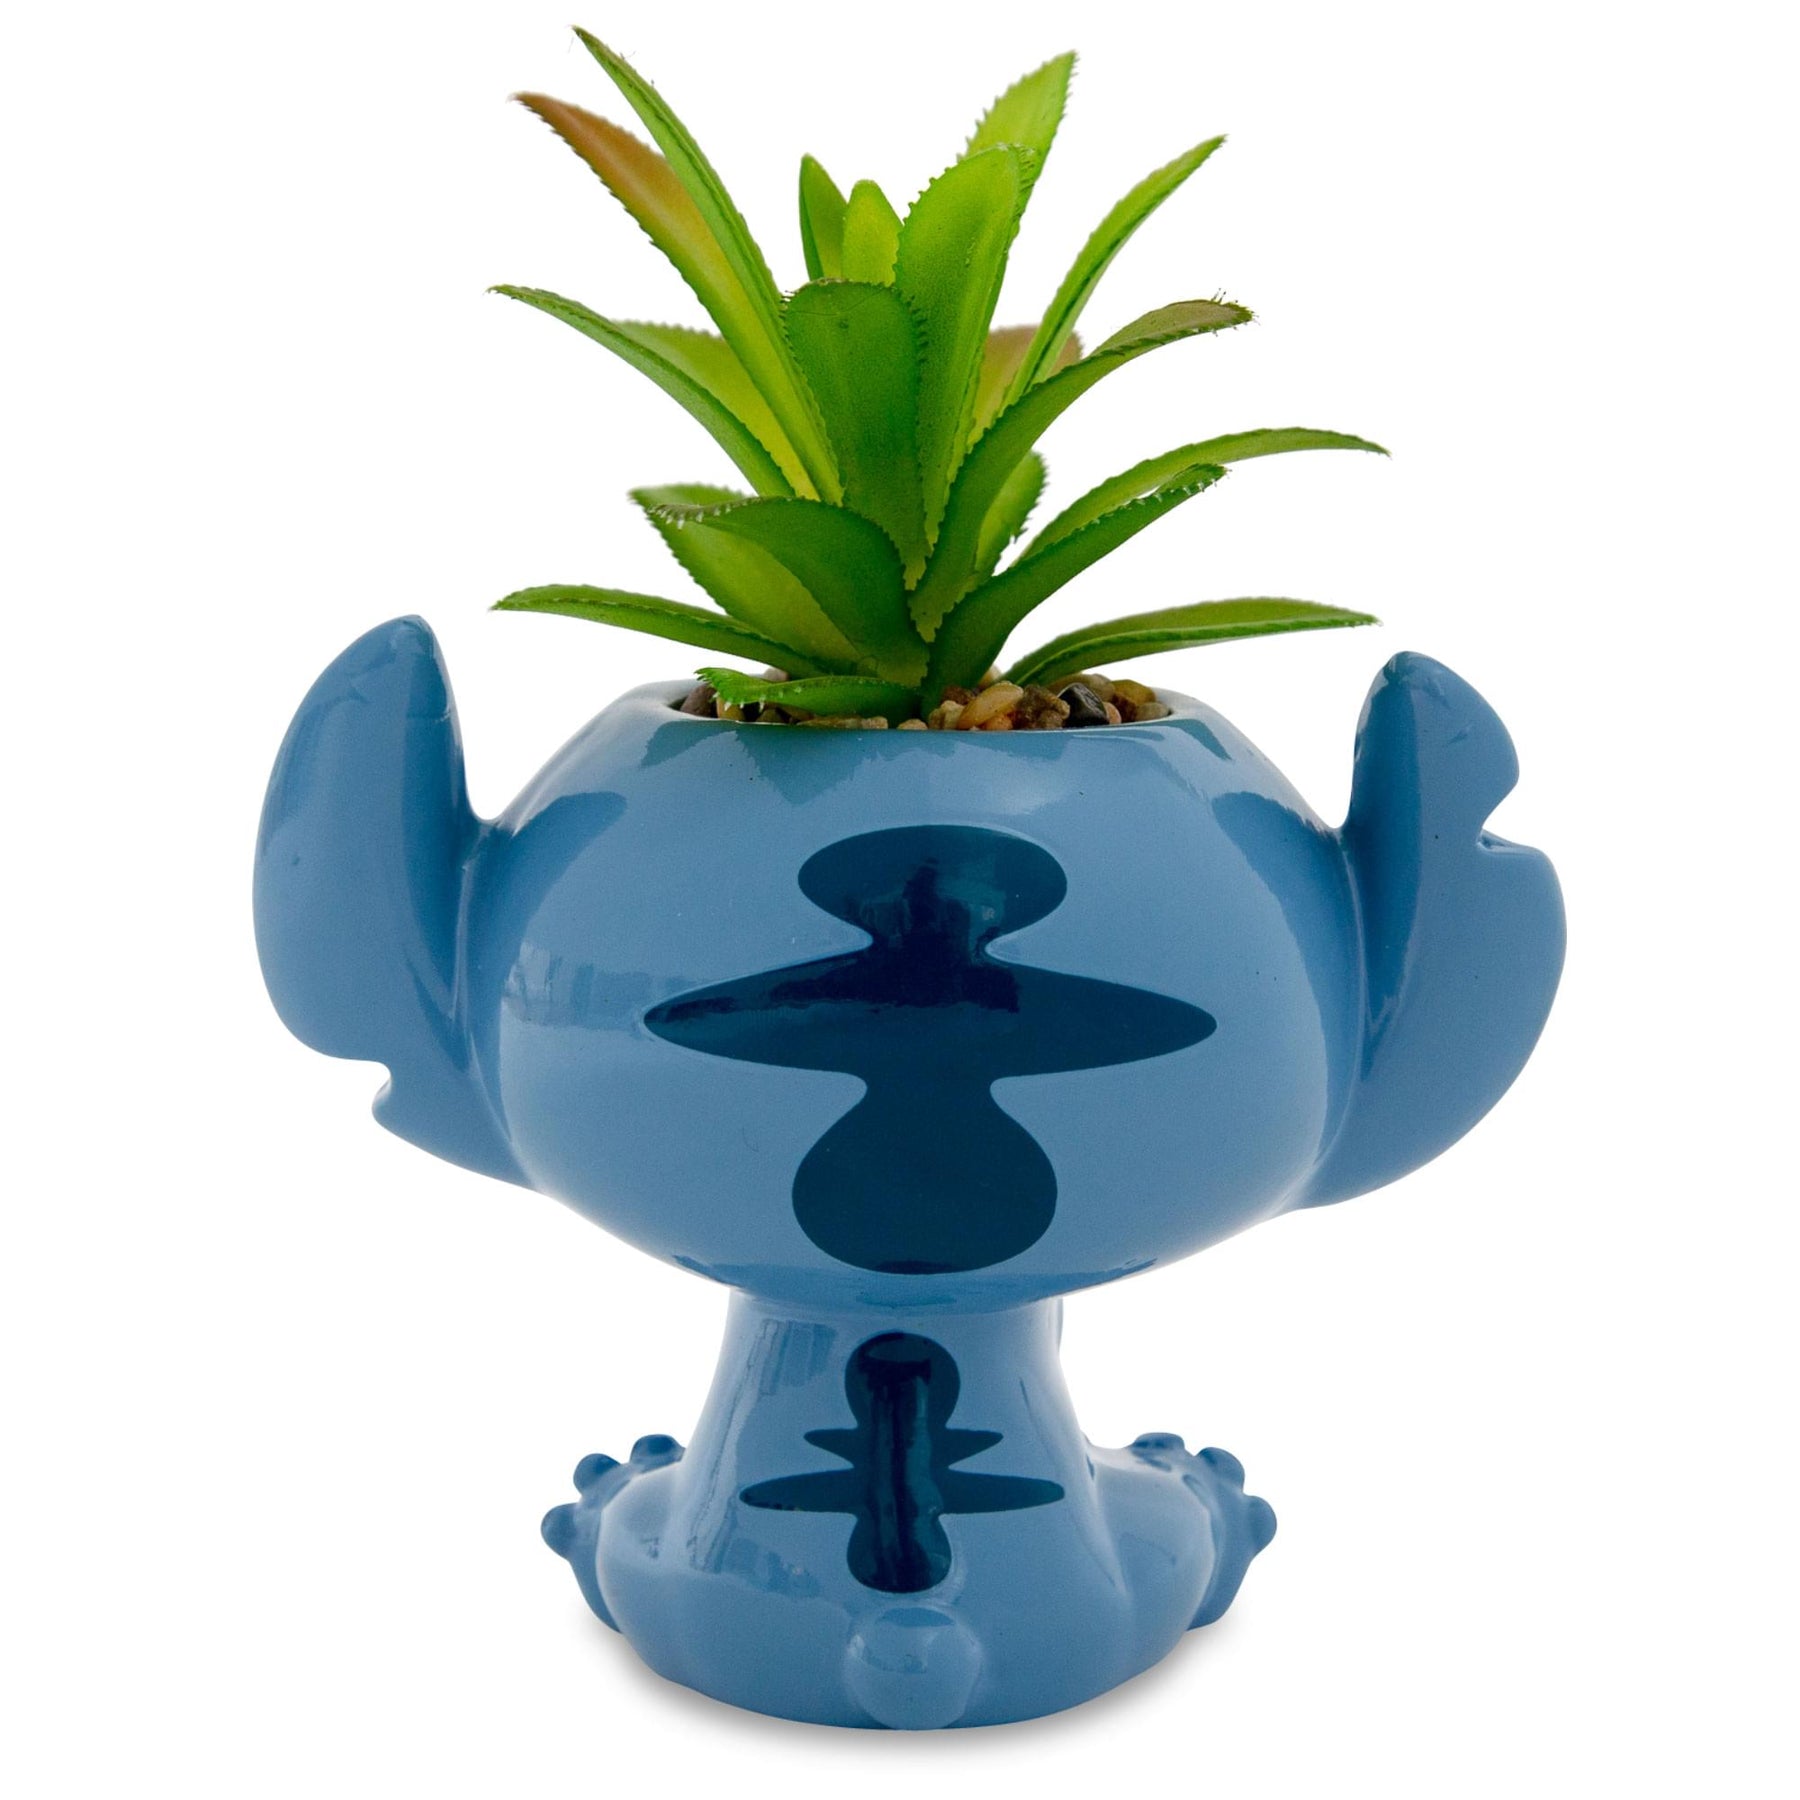 Disney Lilo & Stitch Full Body 5-Inch Ceramic Planter with Artificial Succulent